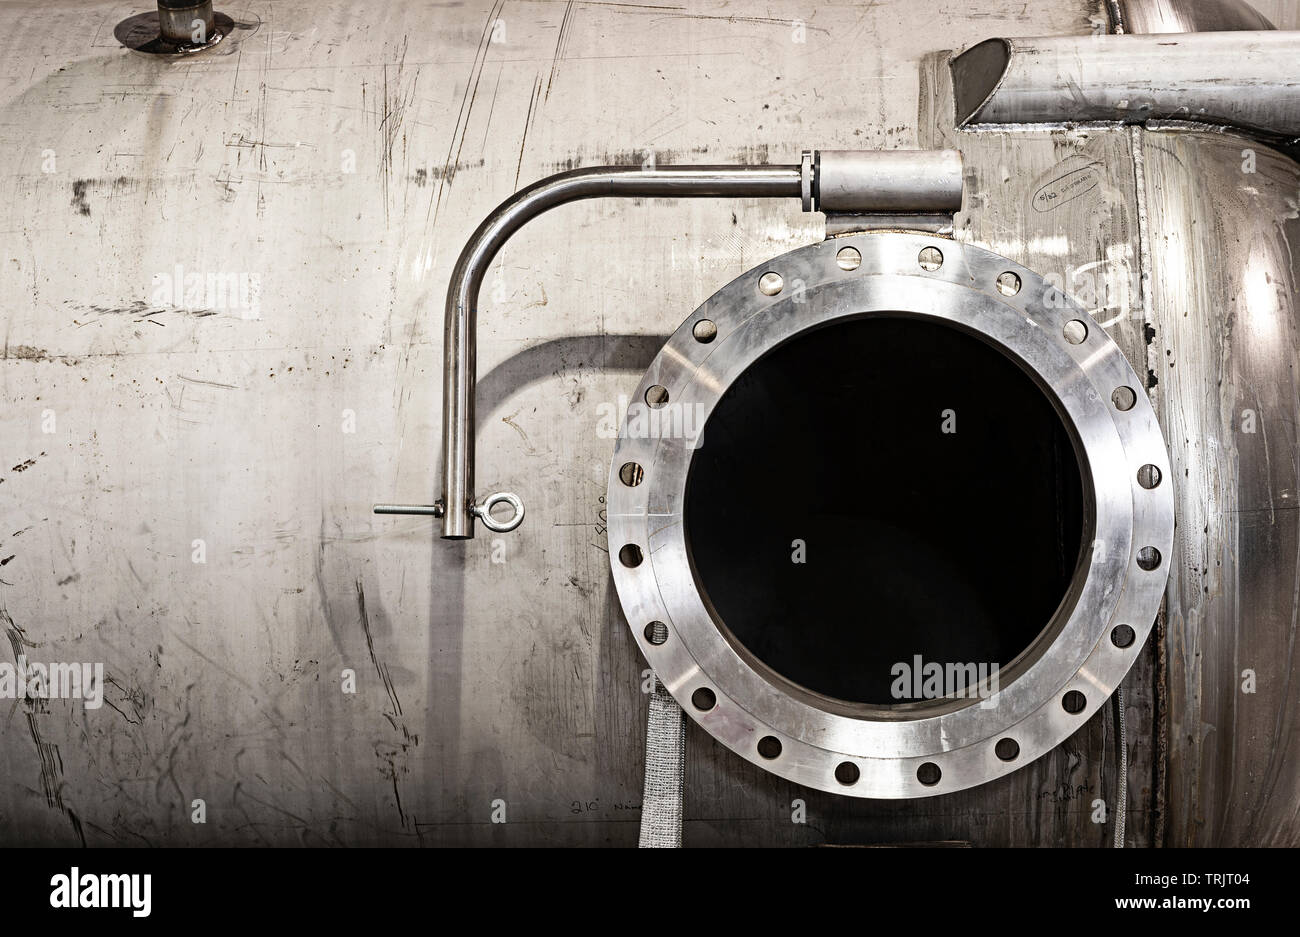 Industrielle Stahltank Druckbehälter mit offenen Bohrung Stockfoto